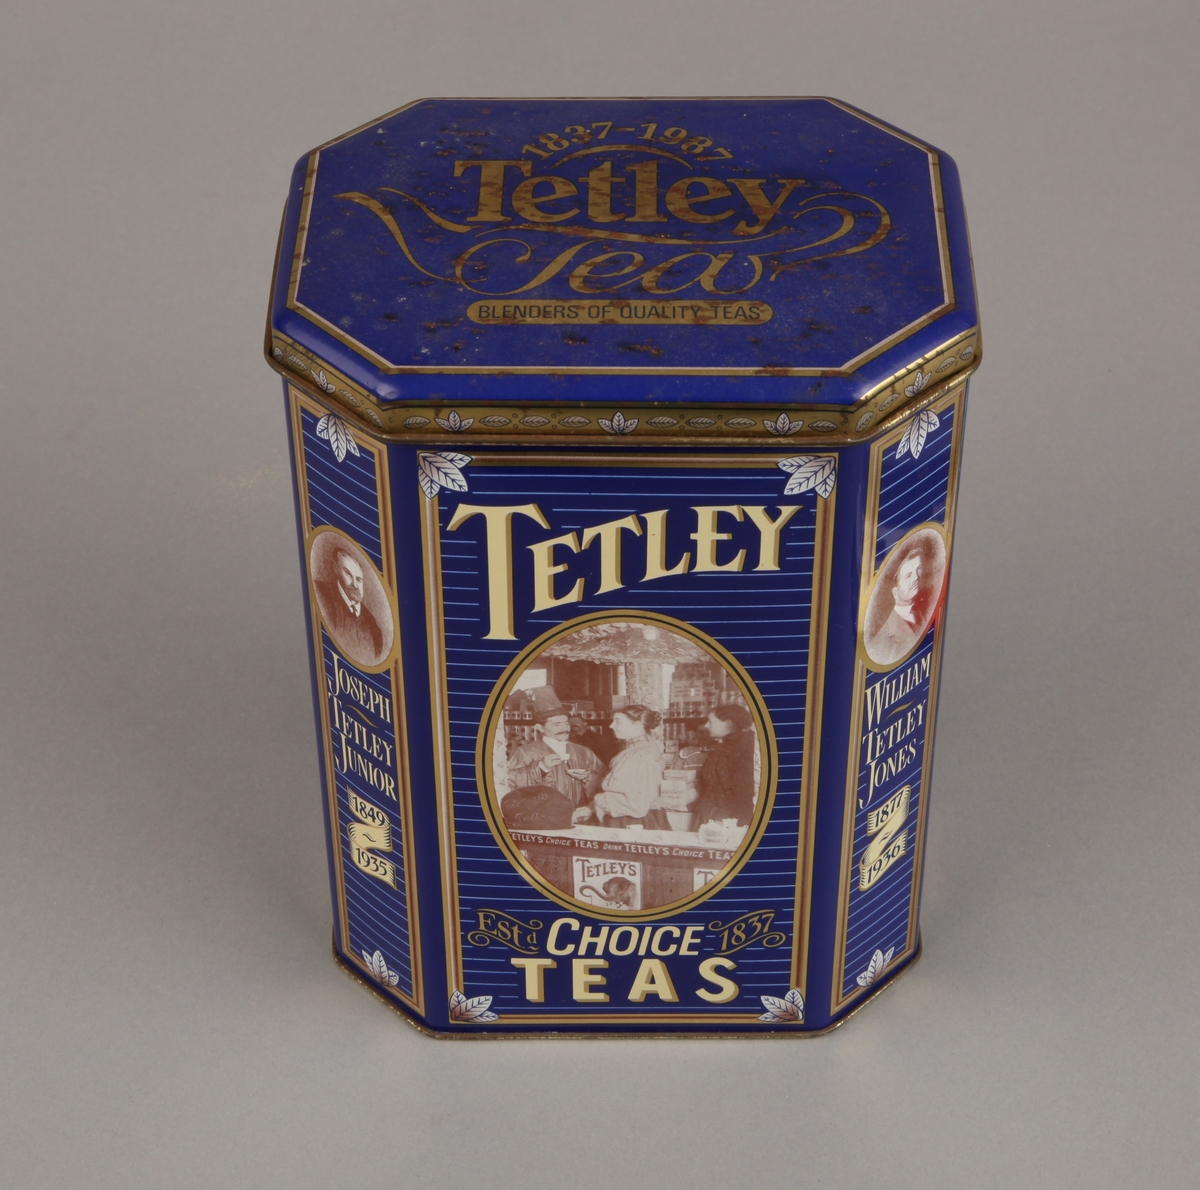 Fotografier av familien Tetley og fra teutsalget på 1800-tallet. Teblader